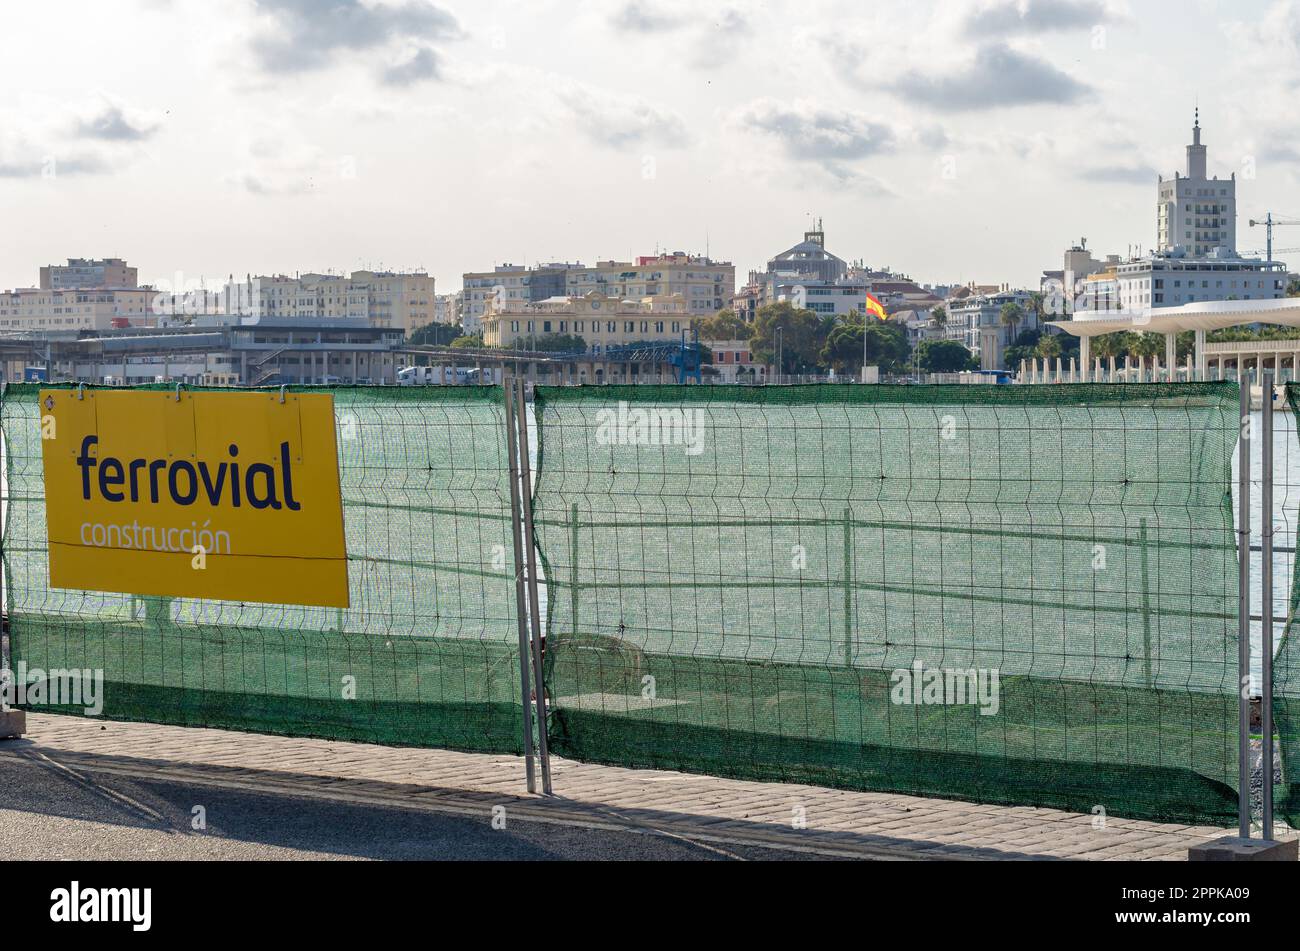 MALAGA, SPANIEN - 12. OKTOBER 2021: Bauzone im Hafen von Malaga mit dem Logo von Ferrovial, einem spanischen multinationalen Unternehmen, das an der Planung, dem Bau, der Finanzierung, dem Betrieb und der Instandhaltung von Verkehrsinfrastruktur und städtischen Diensten beteiligt ist Stockfoto